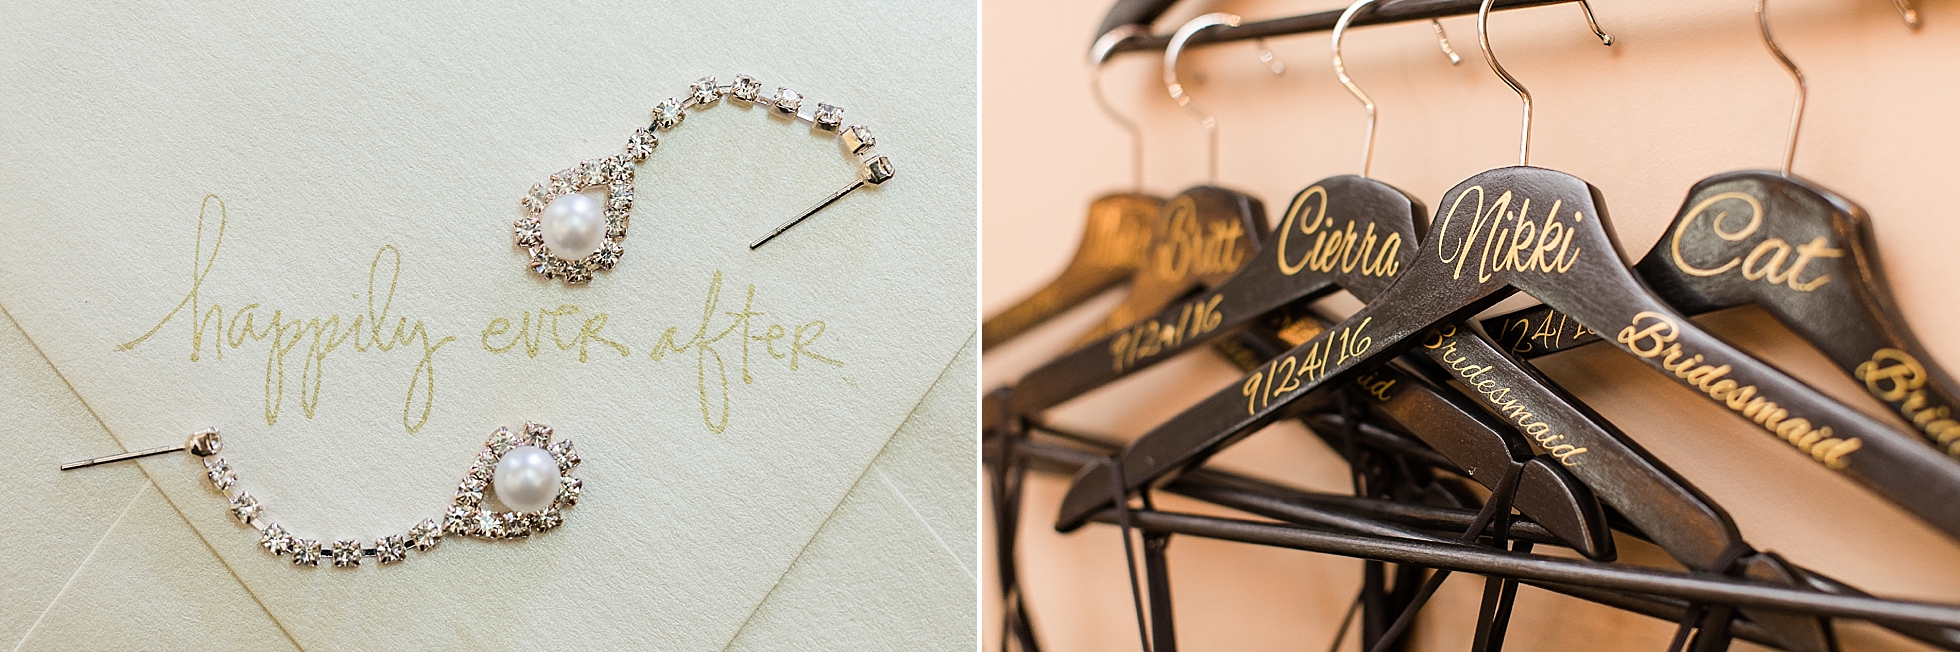 wedding details hangers